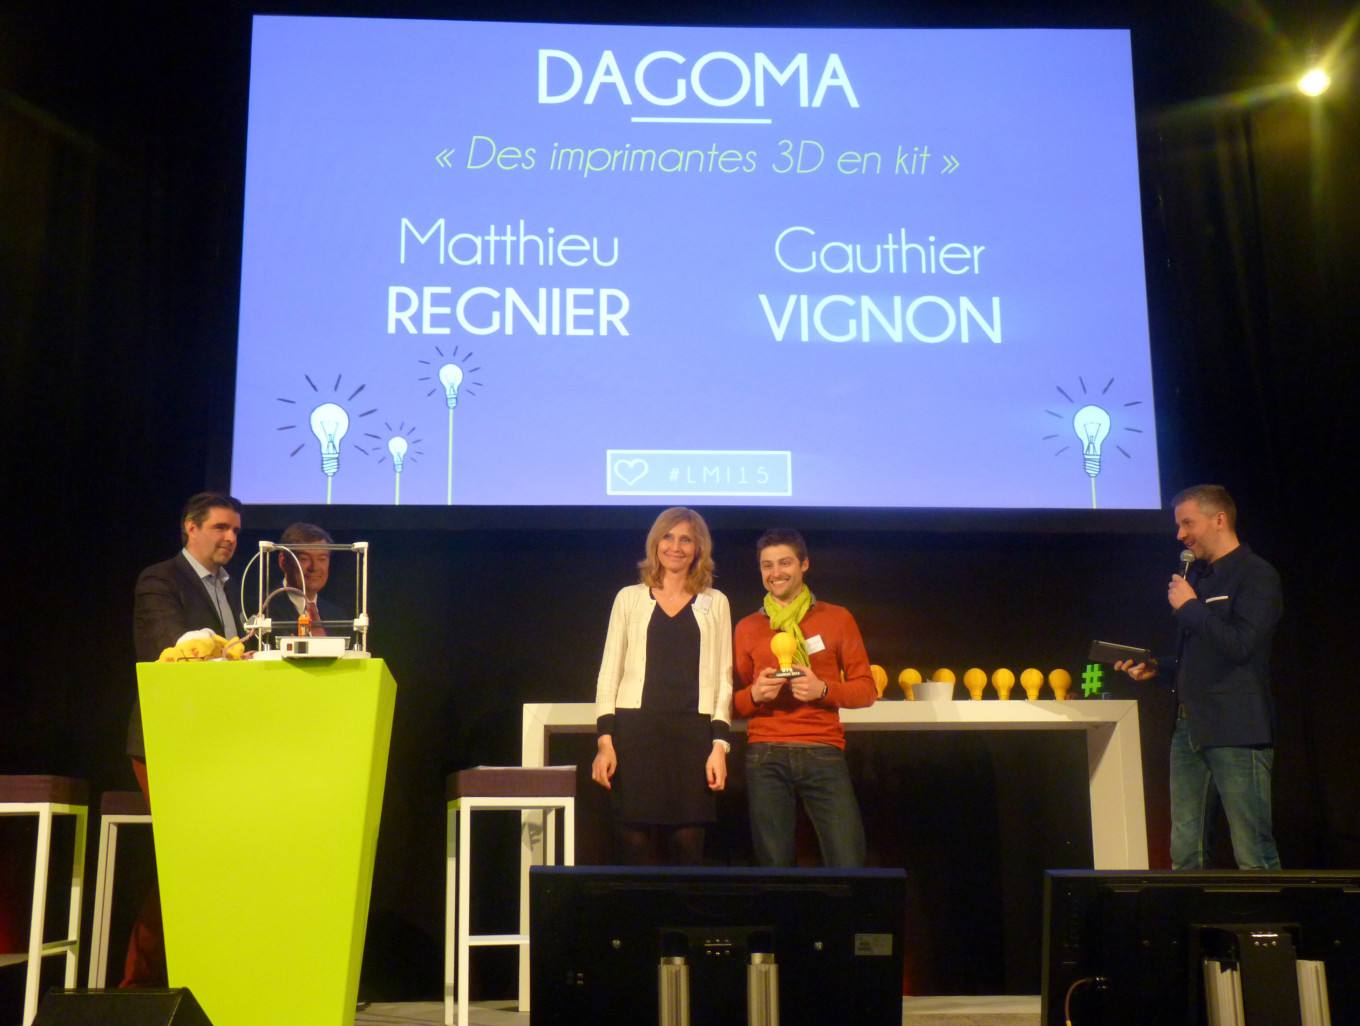 Les trophées ont été réalisés en impression 3D par Dagoma (Matthieu Régnier et Gauthier Vignon), lauréat 2015.